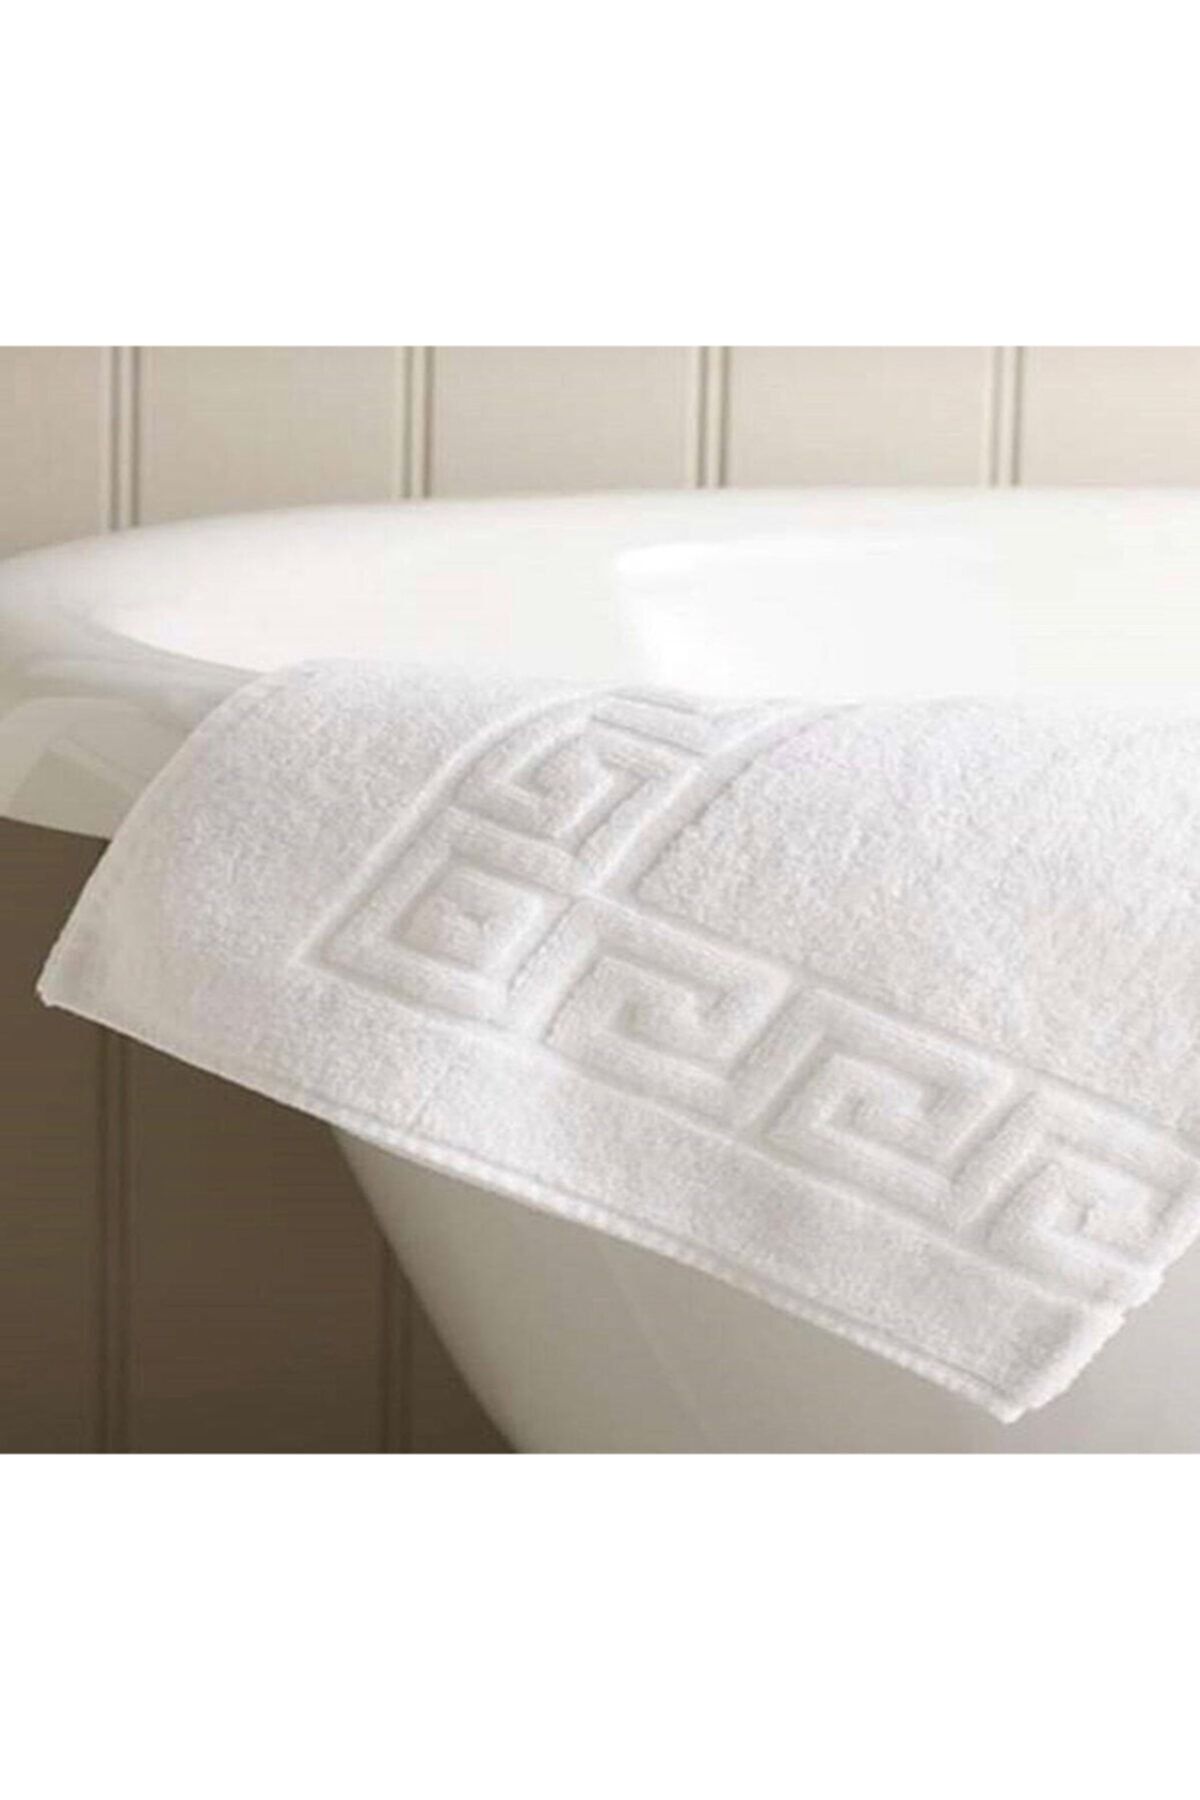 İzgi Concept Pamuklu Banyo Paspası Ayak Havlusu 50x70 Beyaz Yüksek Emici Özellikli